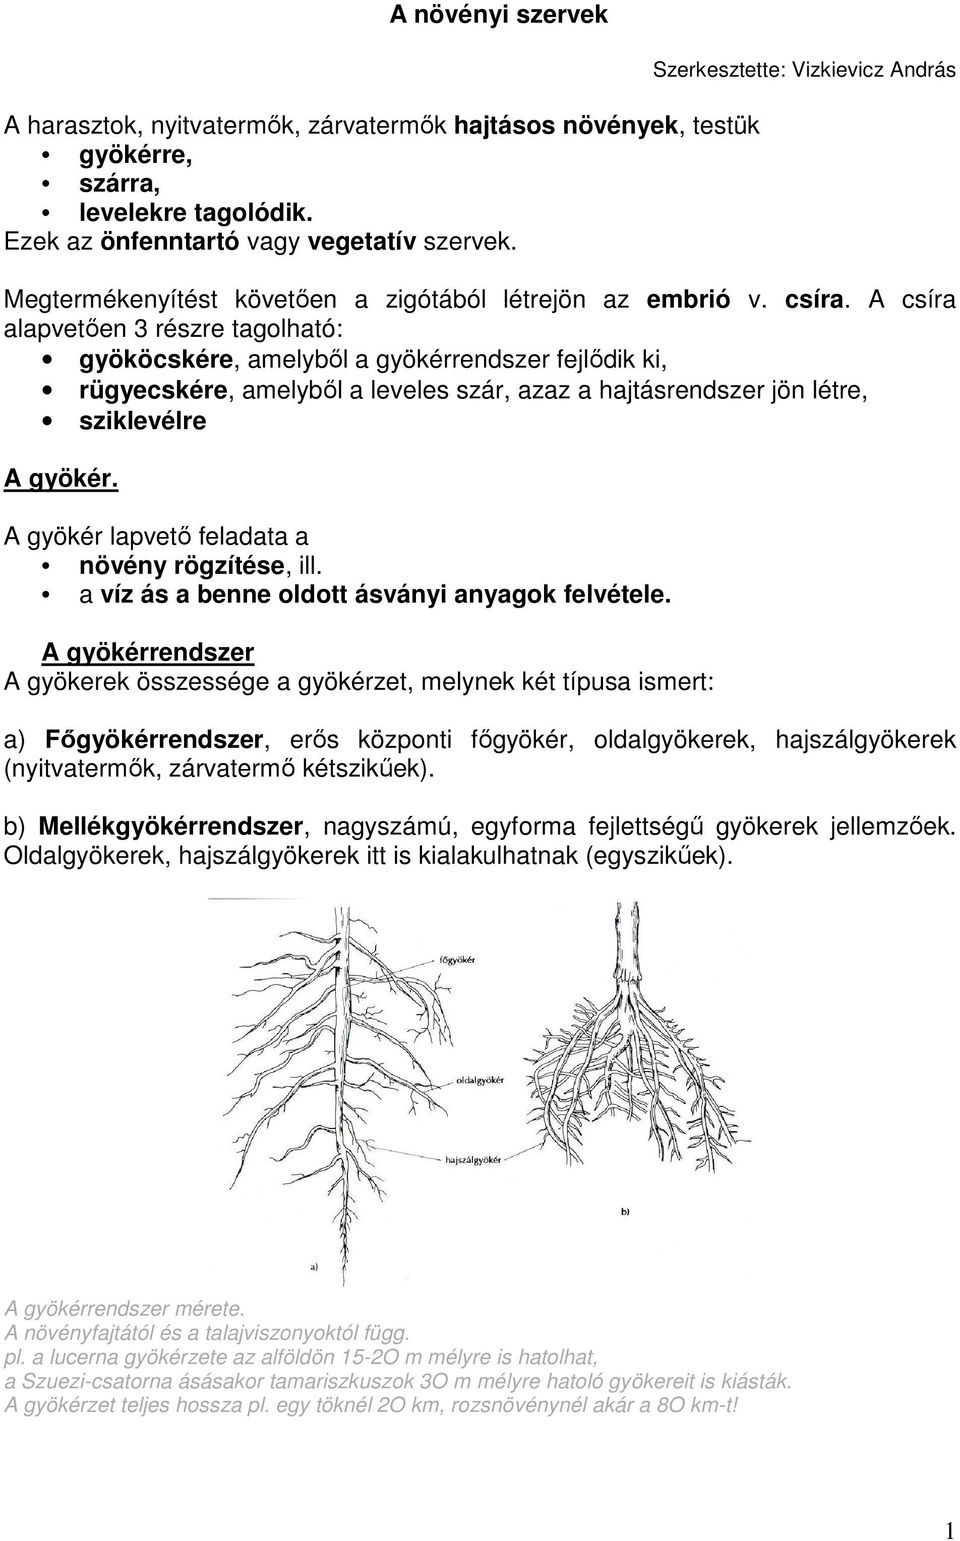 A növényi szervek. A gyökér. A gyökér lapvetı feladata a növény rögzítése,  ill. a víz ás a benne oldott ásványi anyagok felvétele. - PDF Free Download